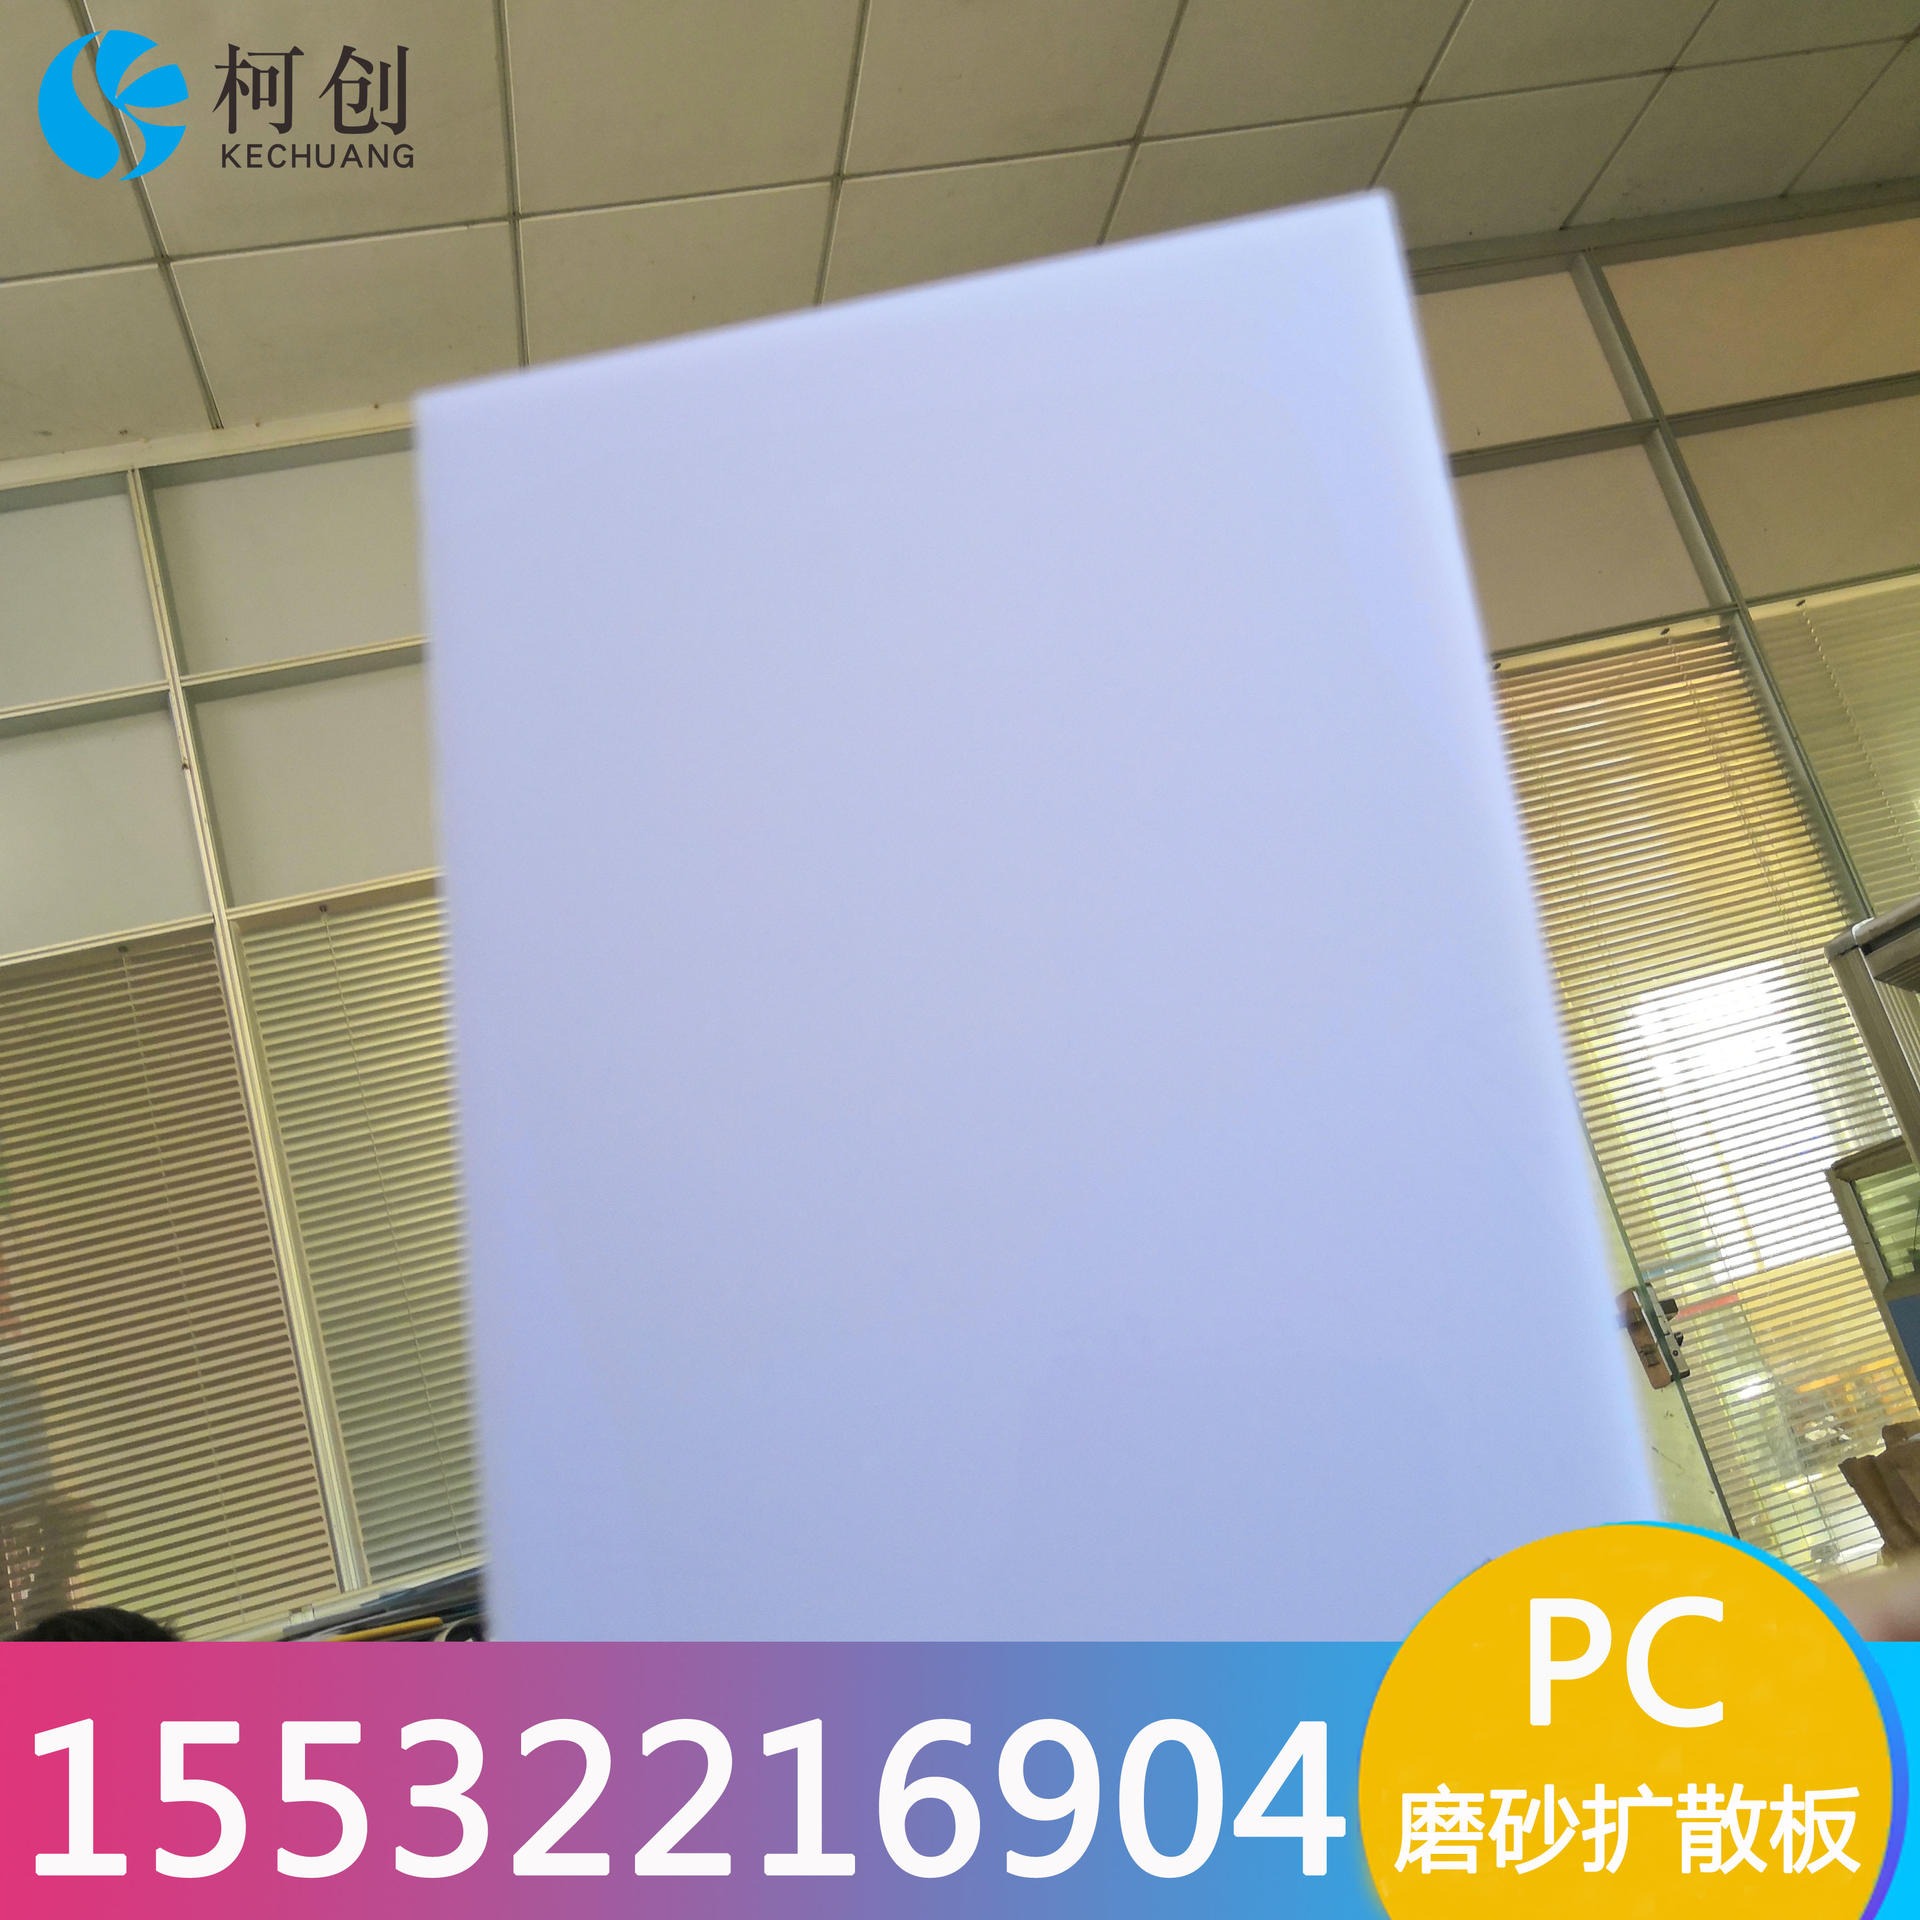 pc匀光板 3mmpc单双面磨砂扩散板 pc乳白色扩散板 灯具面板 超薄0.5mm扩散板